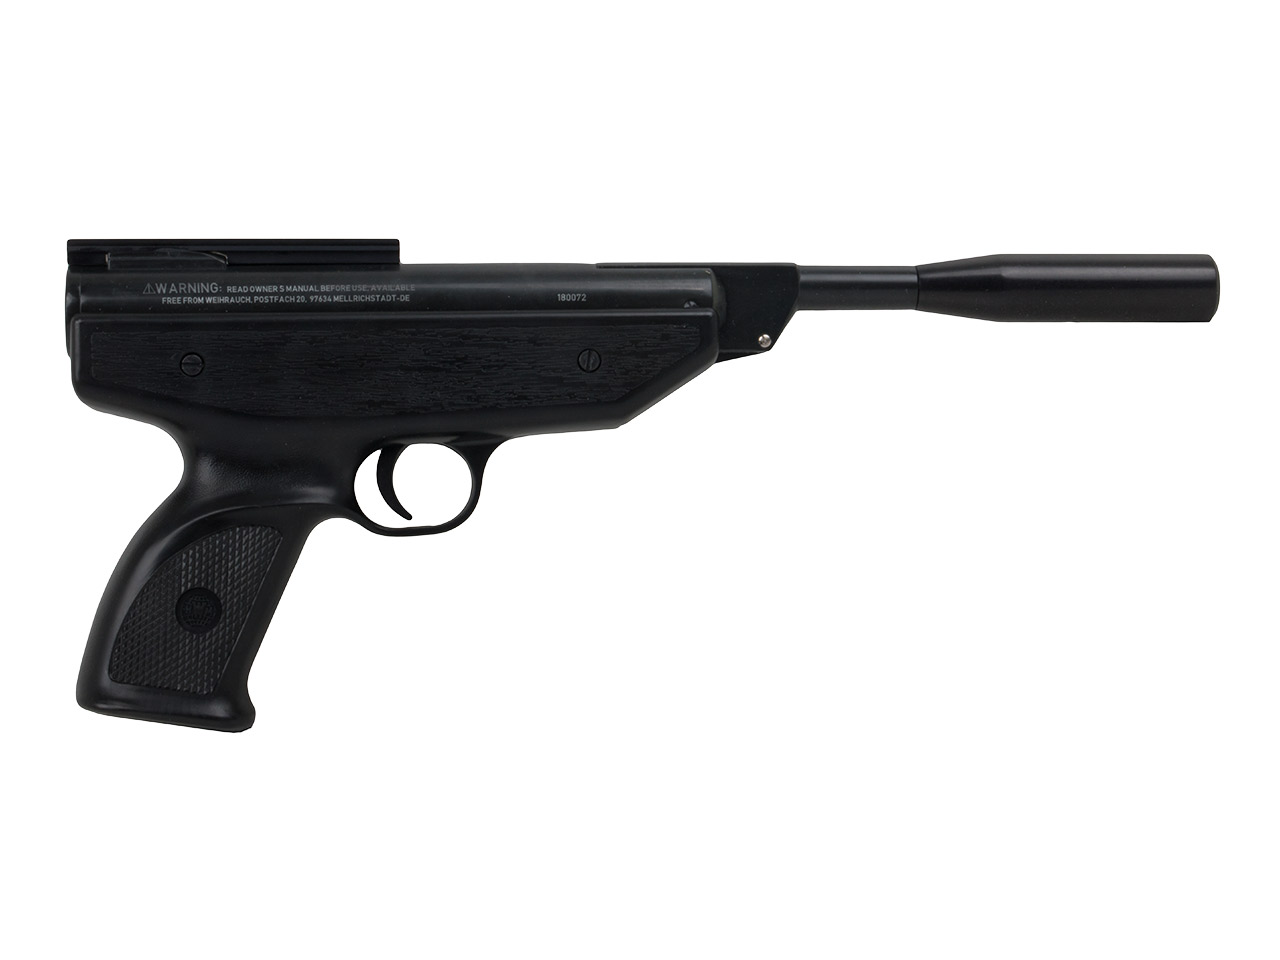 Knicklauf Luftpistole Weihrauch HW 70 Black Arrow schwarz Kaliber 4,5 mm (P18)